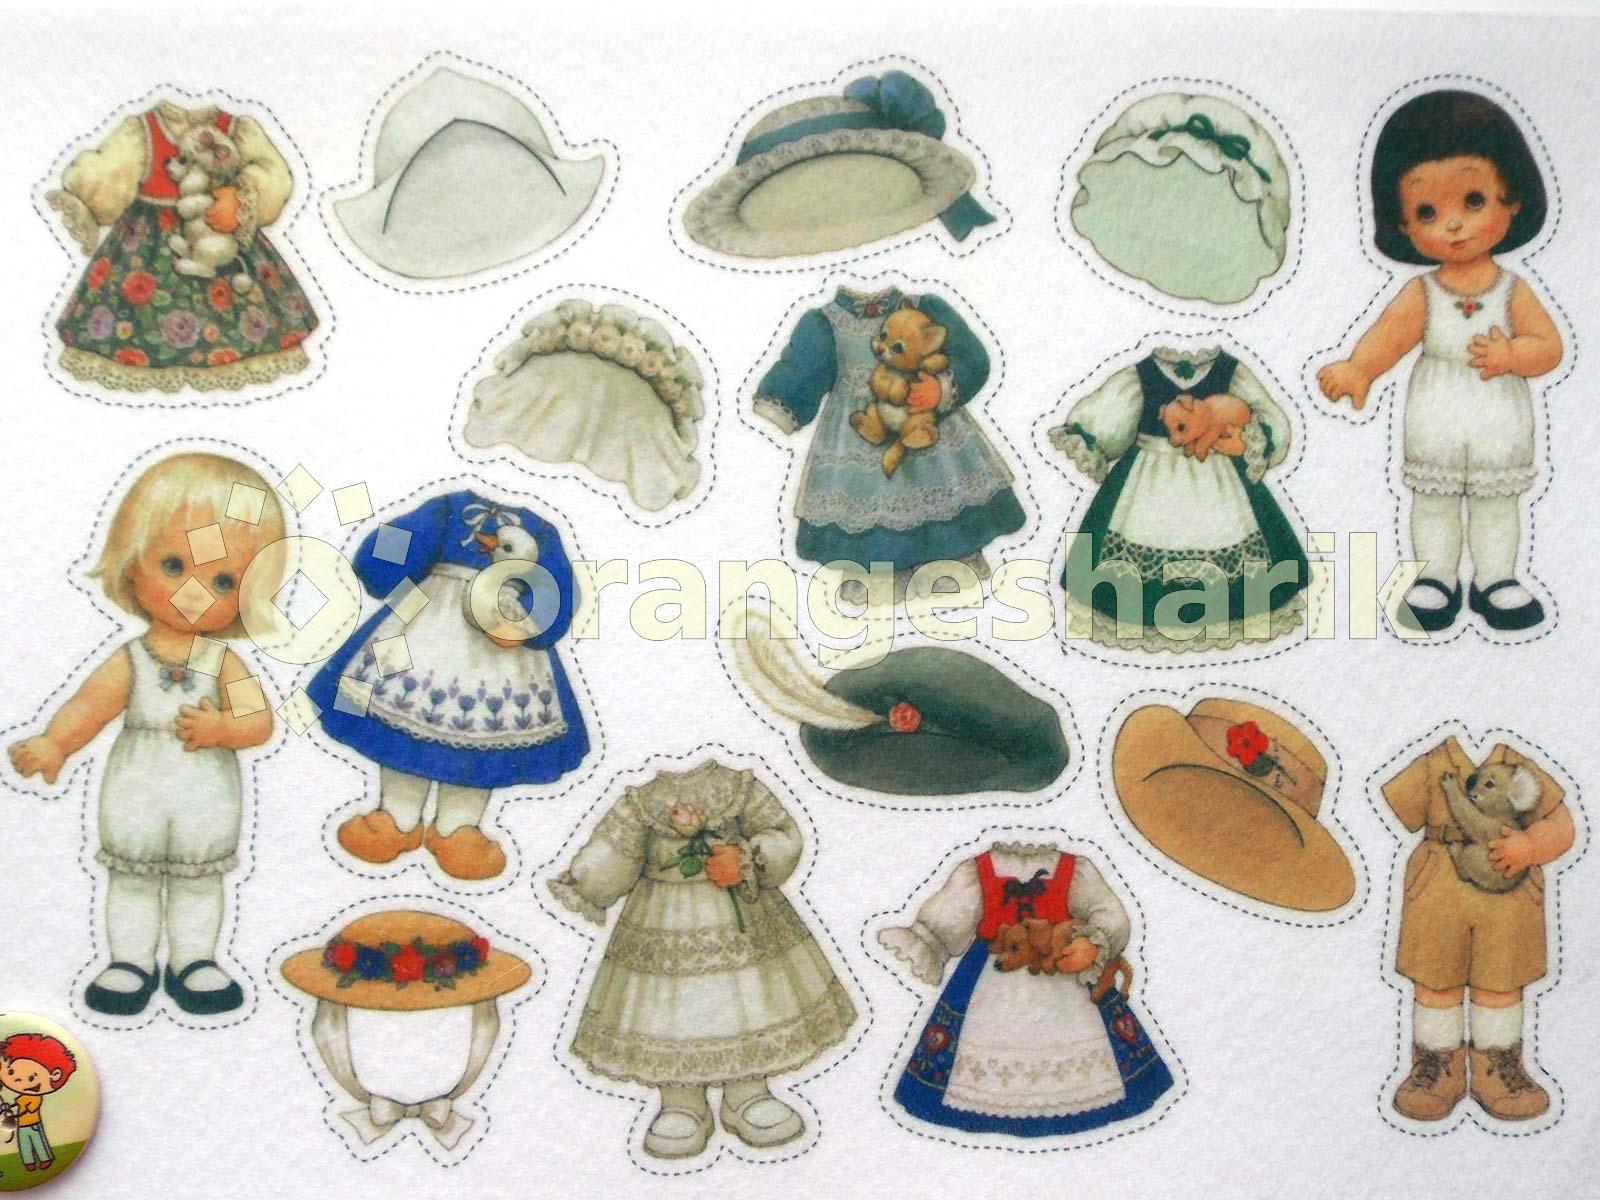 Печать - Куколки с одеждой разных стран